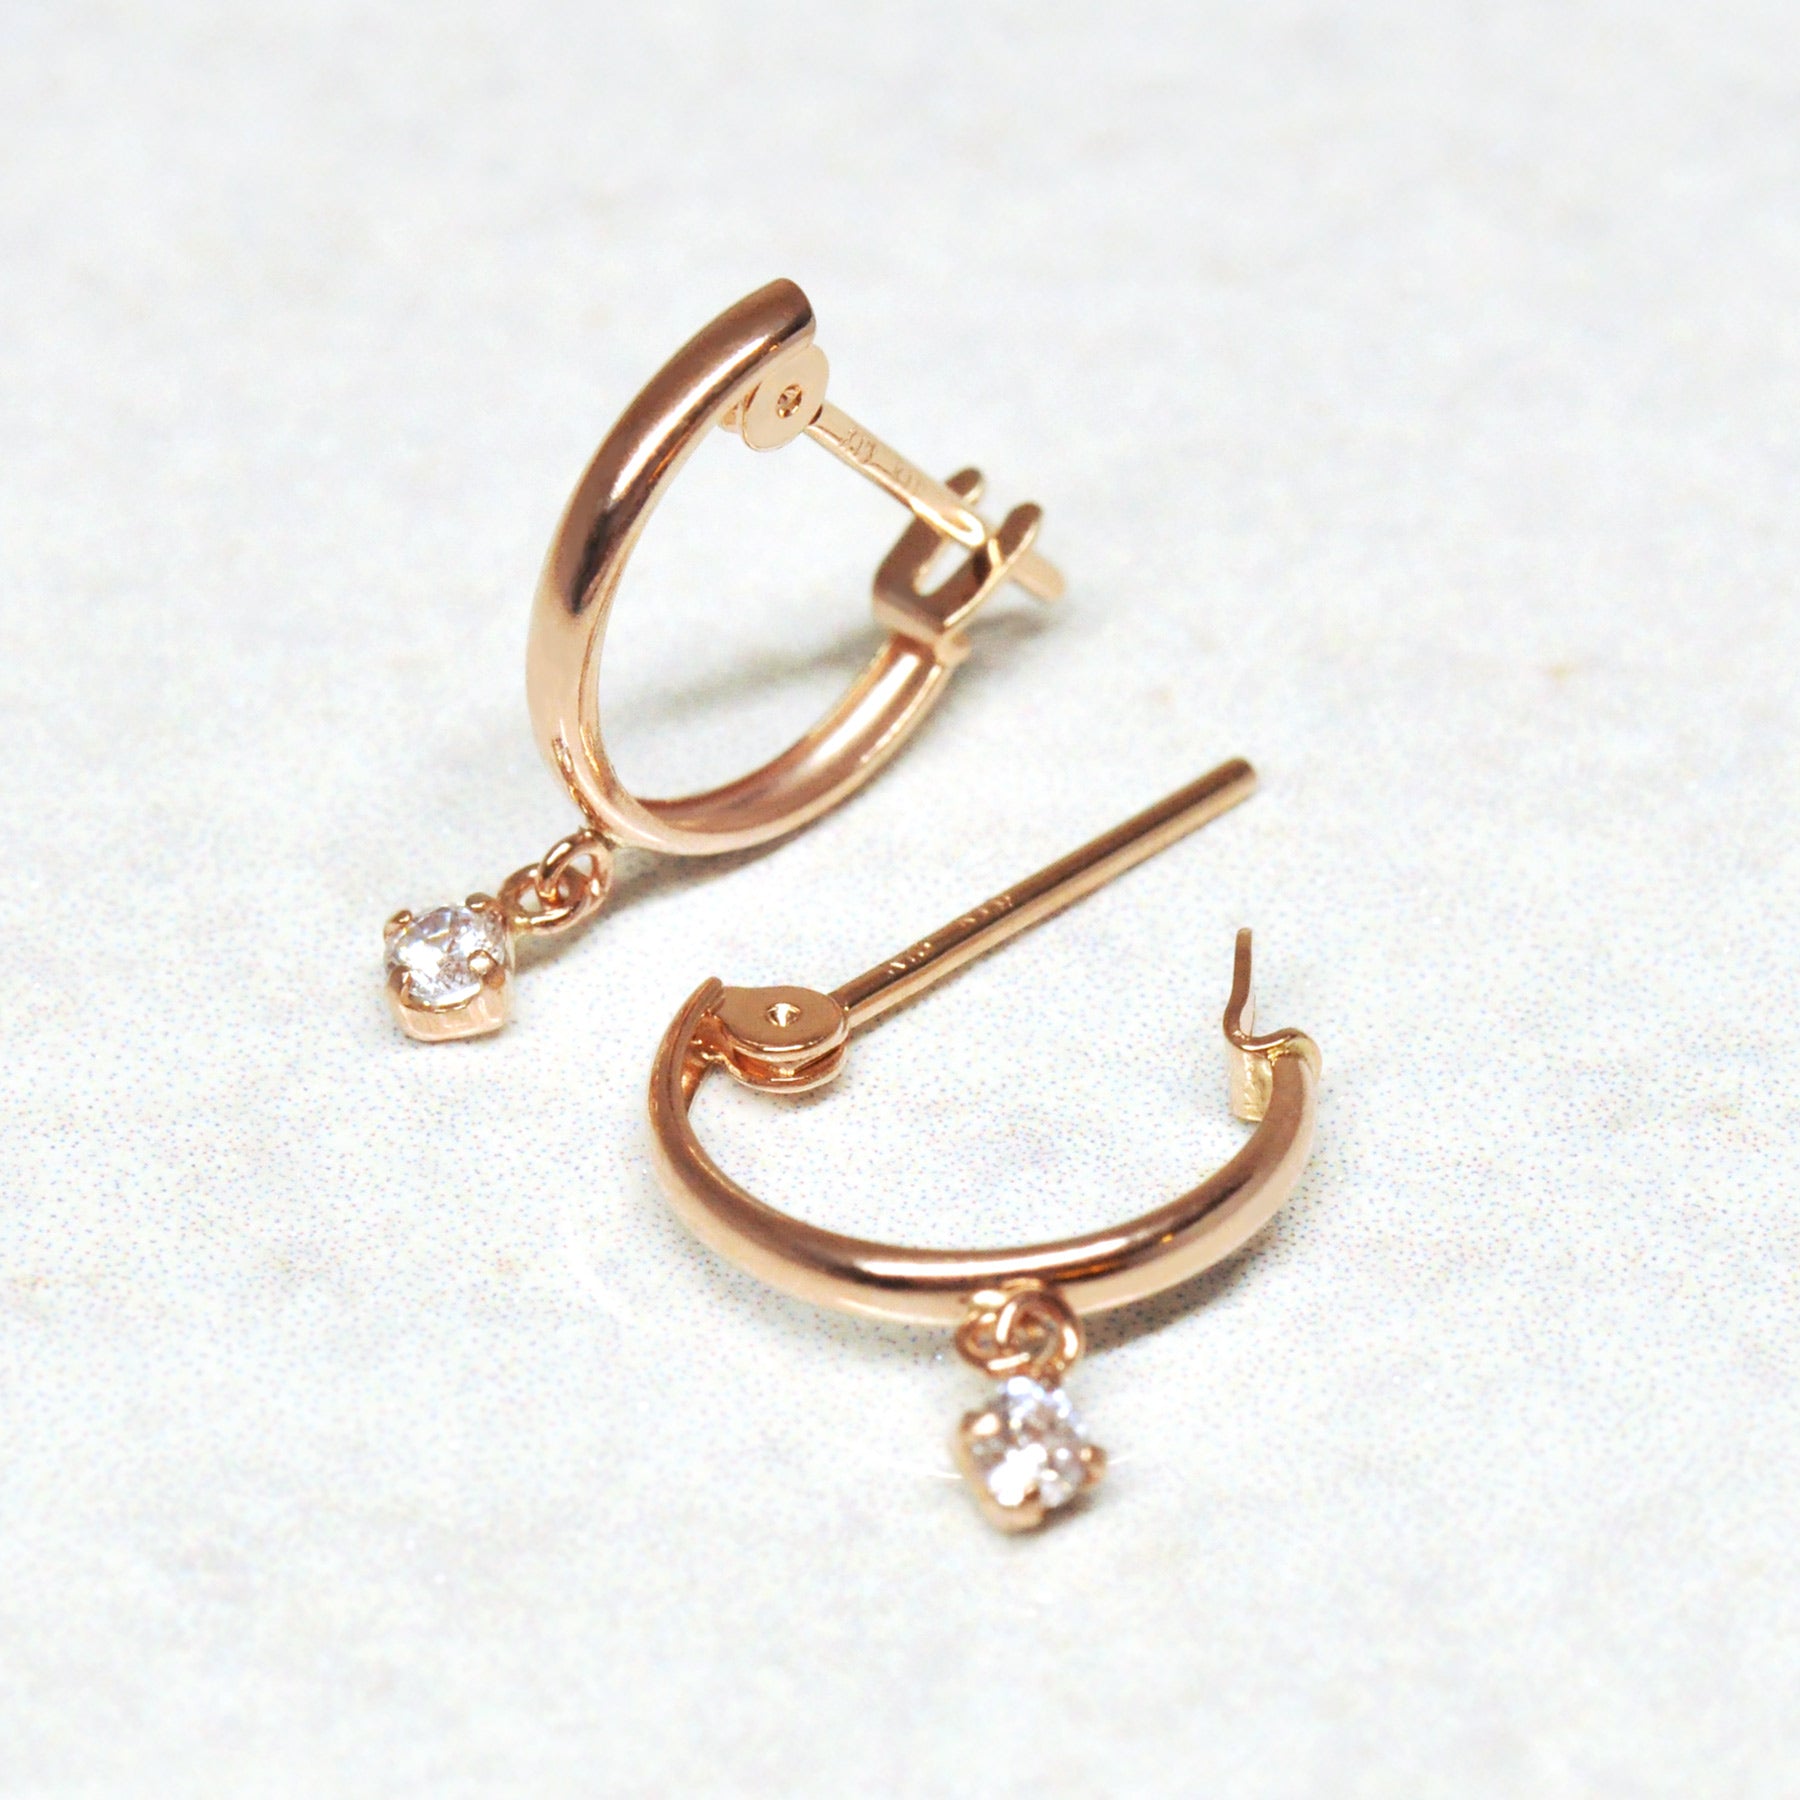 18K/10K Rose Gold Swaying Cubic Zirconia Hoop Earrings - Product Image